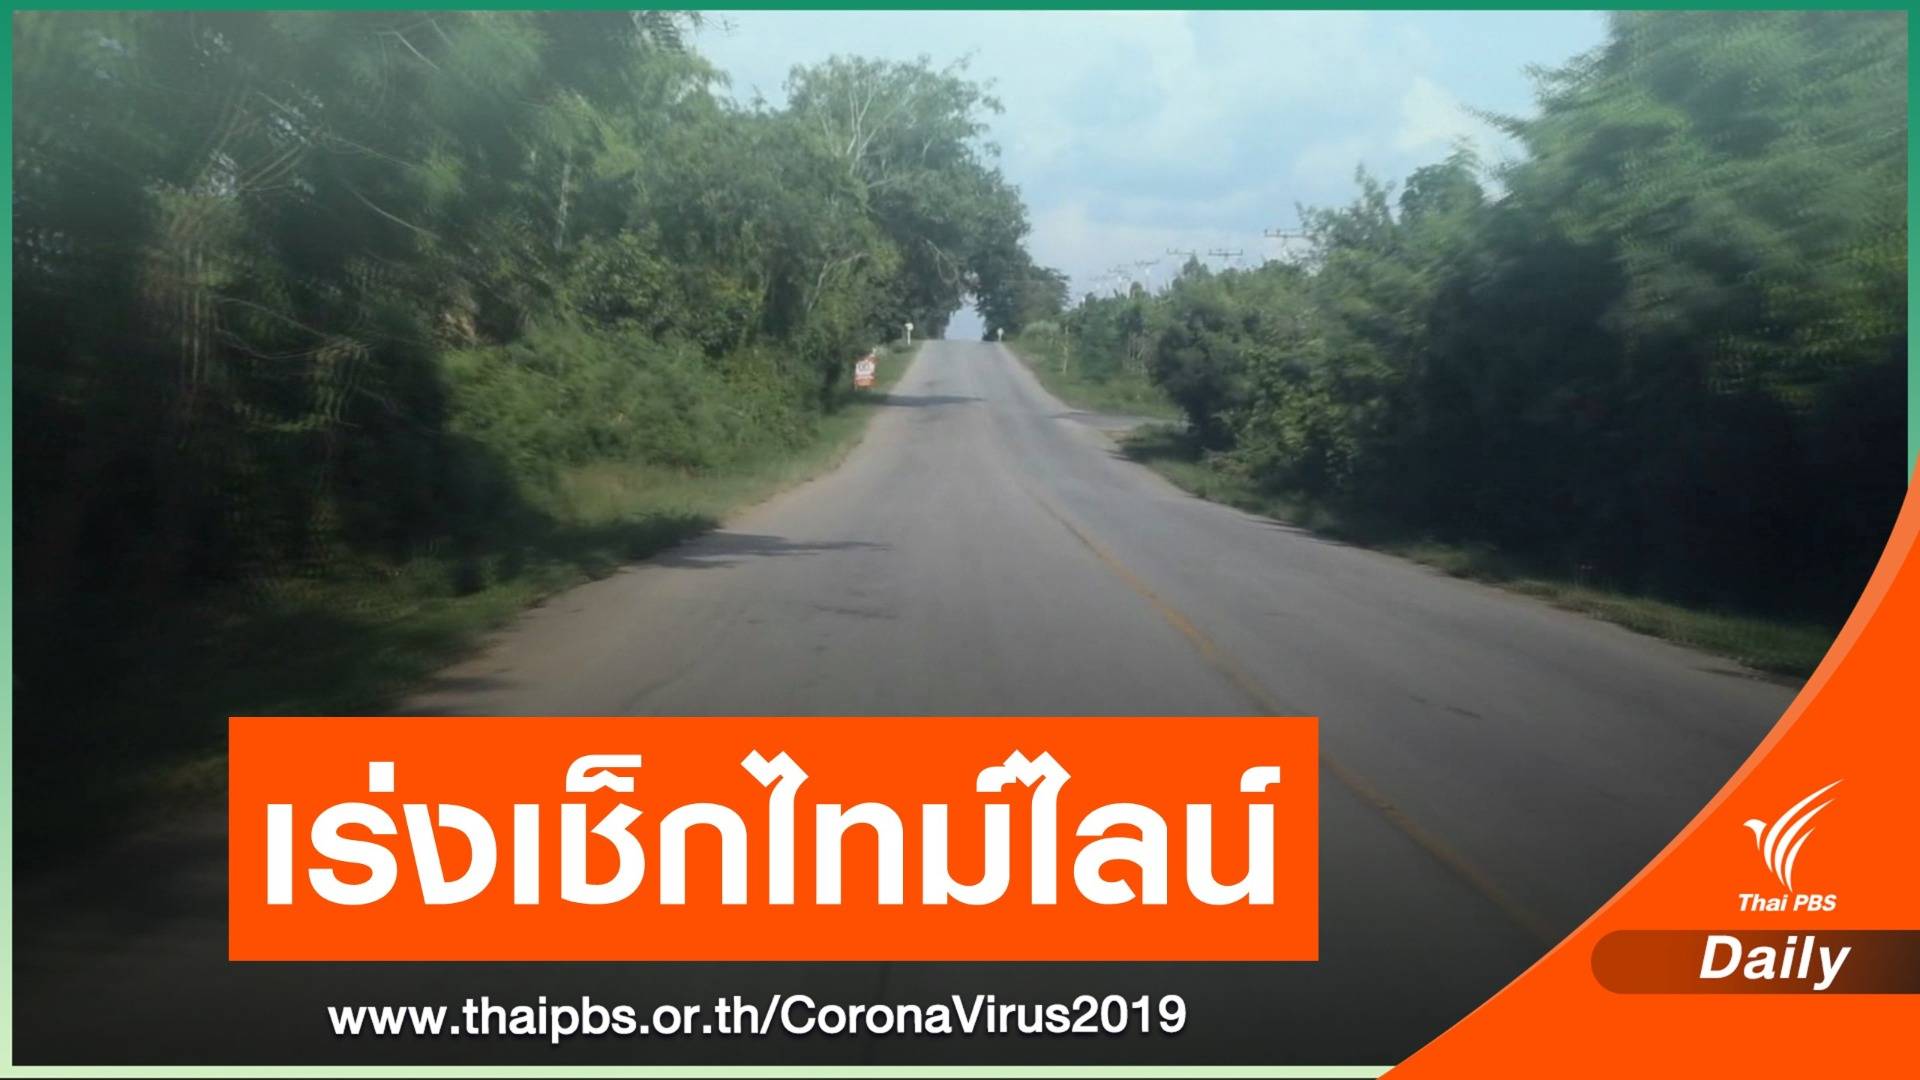 แกะรอยรถตู้ไทยส่งชายชาวกัมพูชา ติด COVID-19 กลับประเทศ 